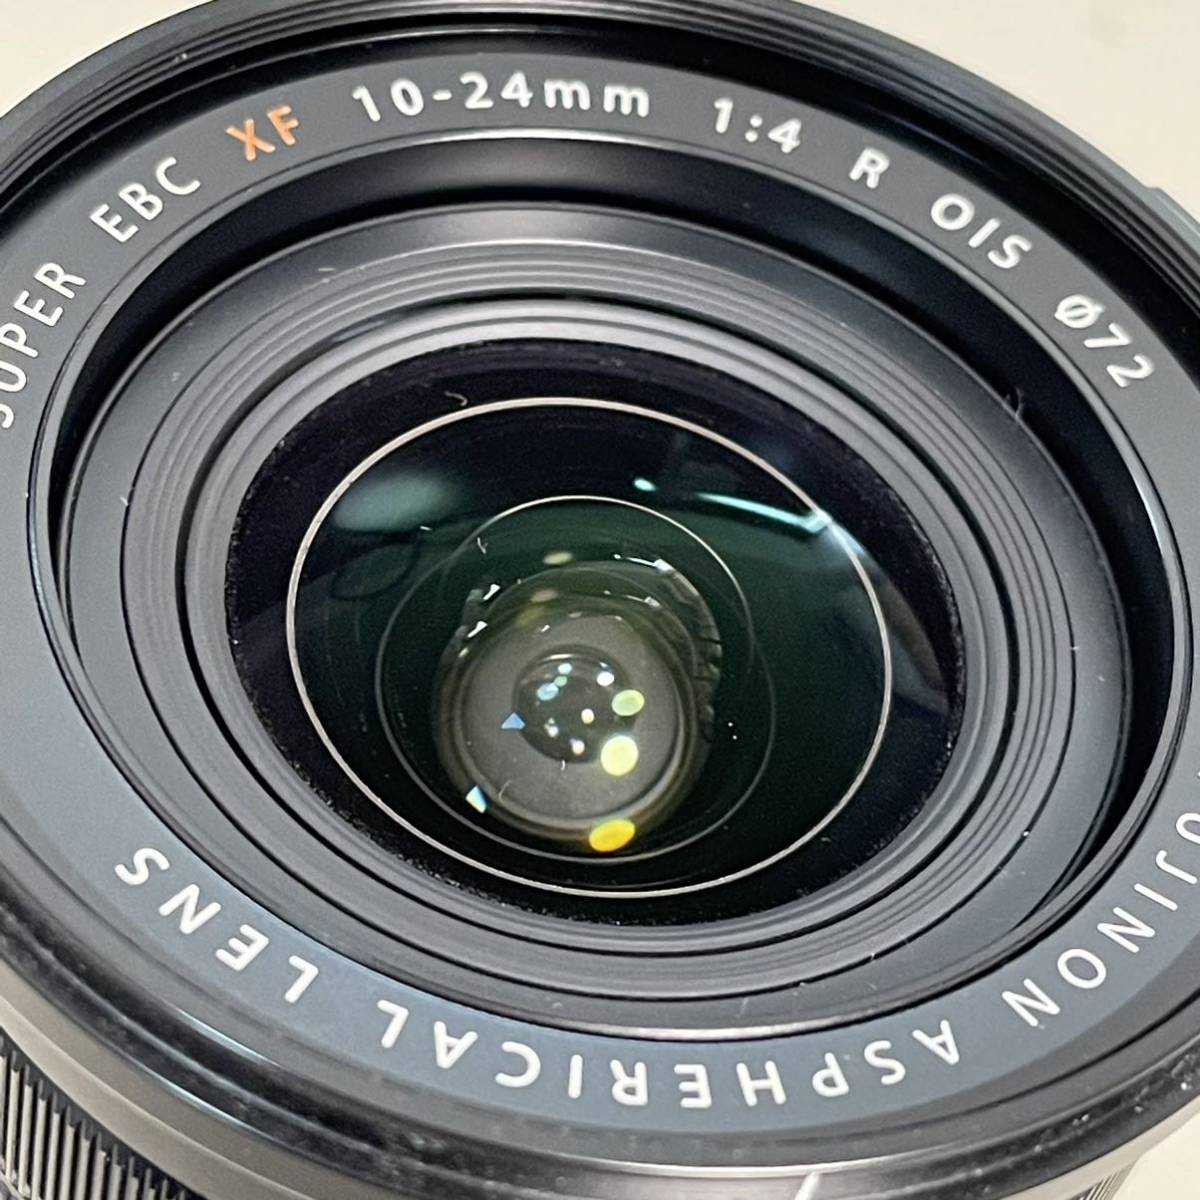  Fuji Film XF10-24mm F4 R OIS